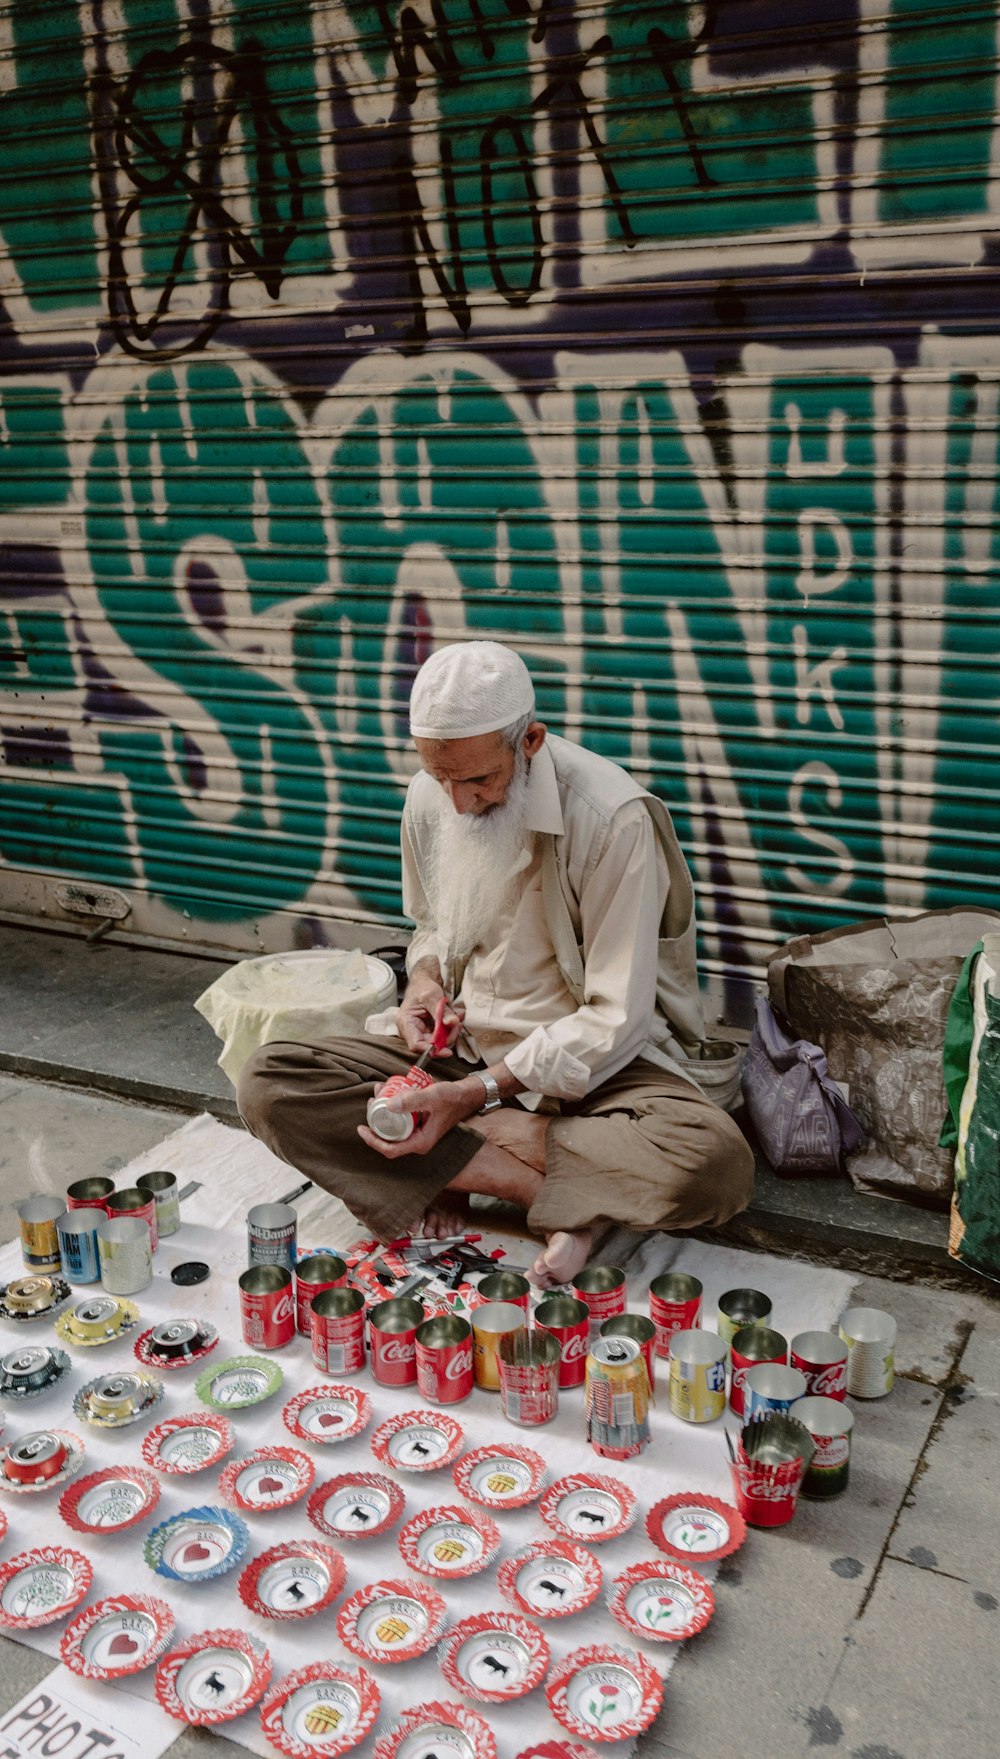 歩道に座って缶の装飾をしている男